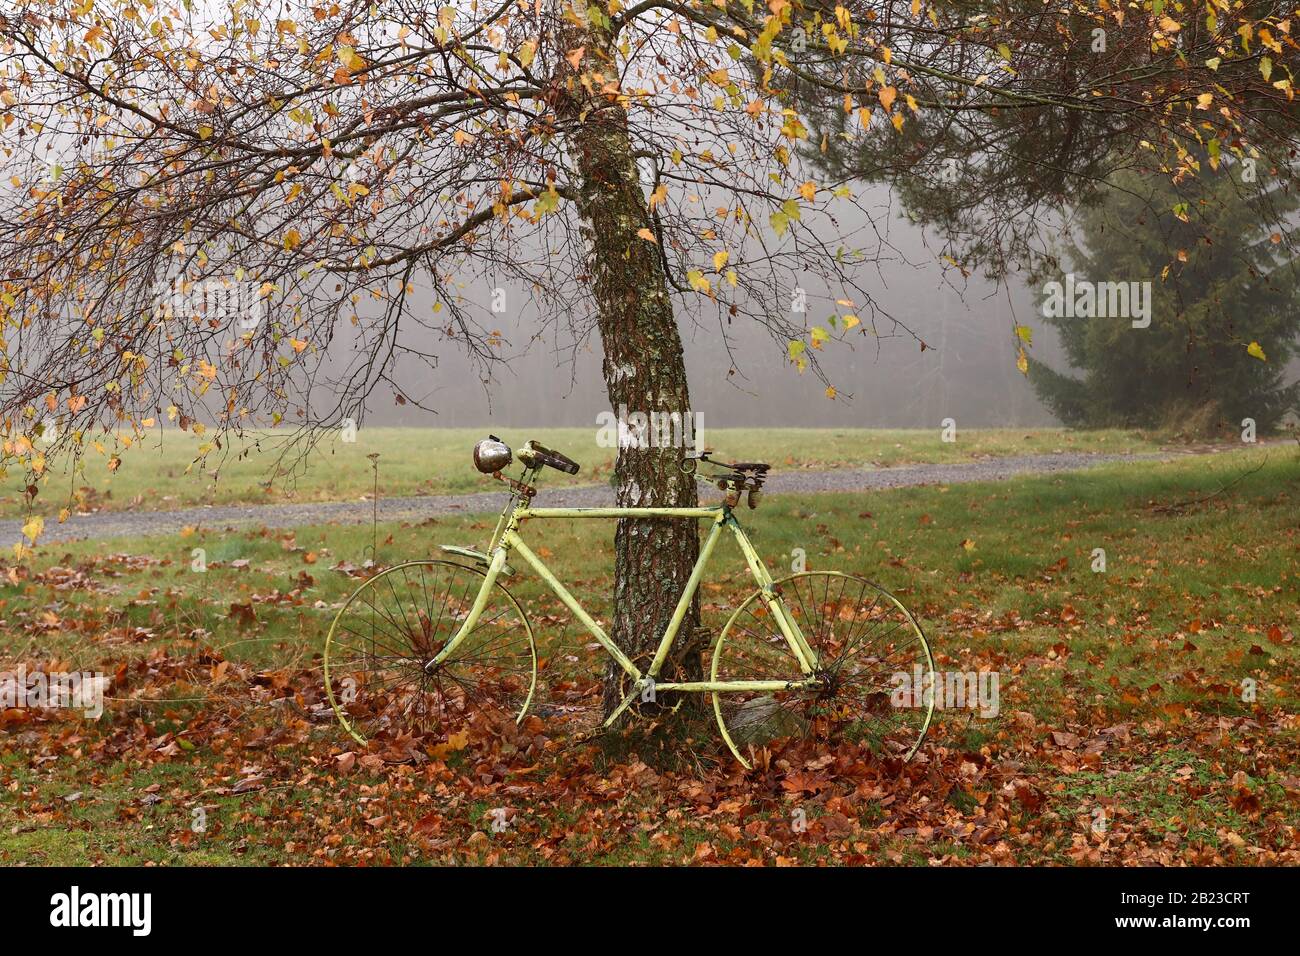 Vecchia bicicletta abbandonata sotto l'albero di betulla di autunno in un giorno nebbioso Foto Stock